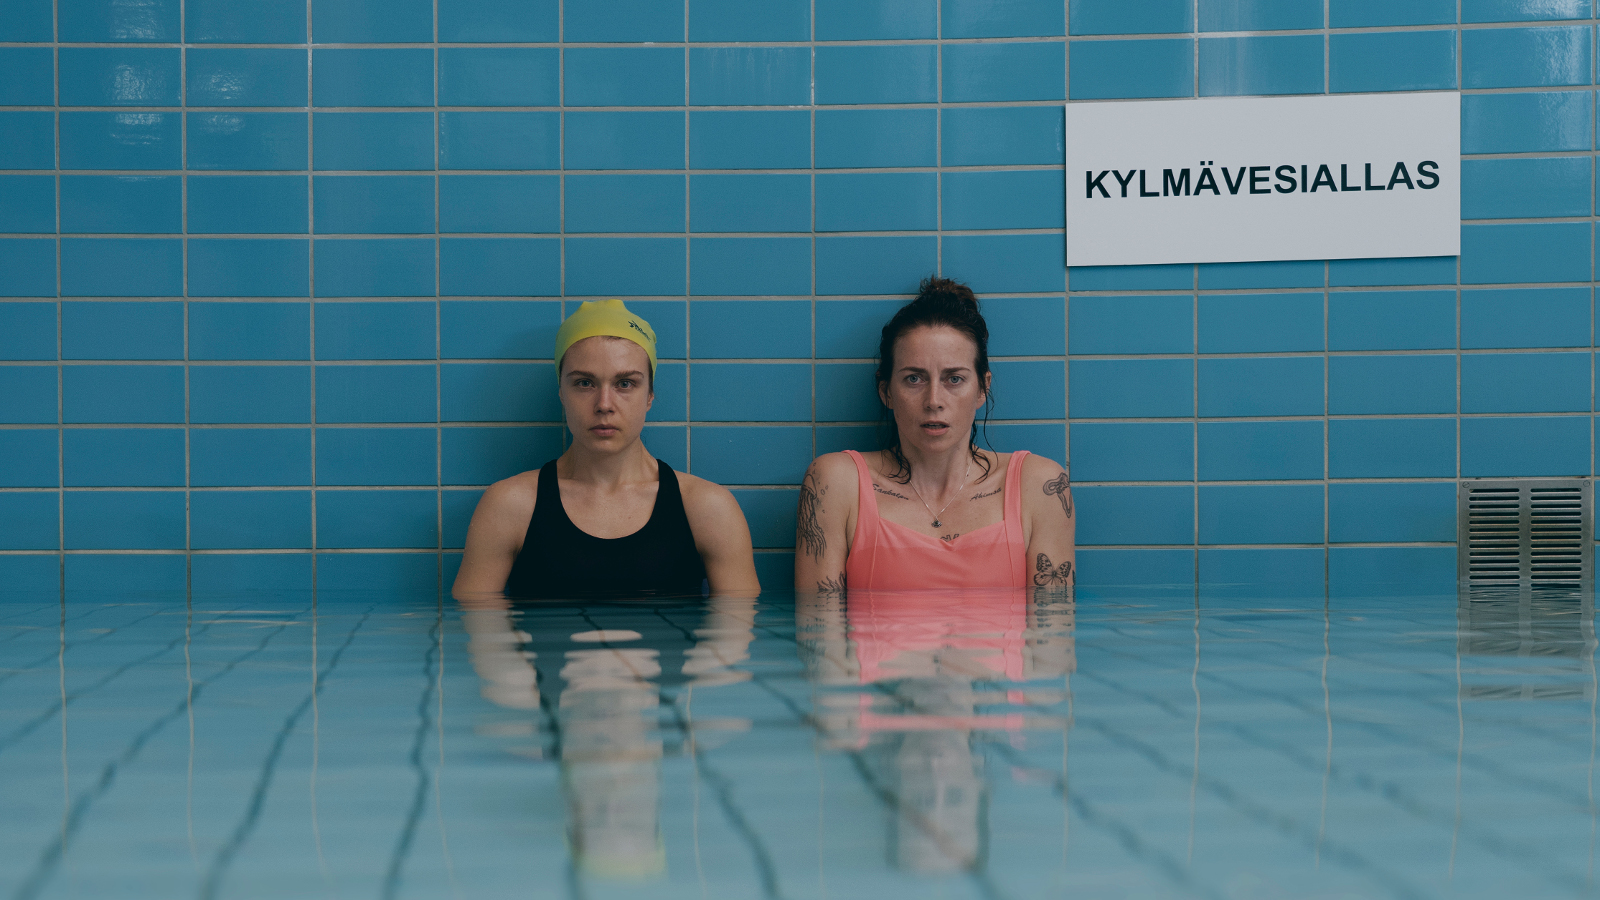 Kuvassa ovat seisomassa Alina Tomnikov ja Iina Kuustonen turkoosissa vesialtaassa vyötäröä myöten. Seinällä on kyltti kylmävesiallas.